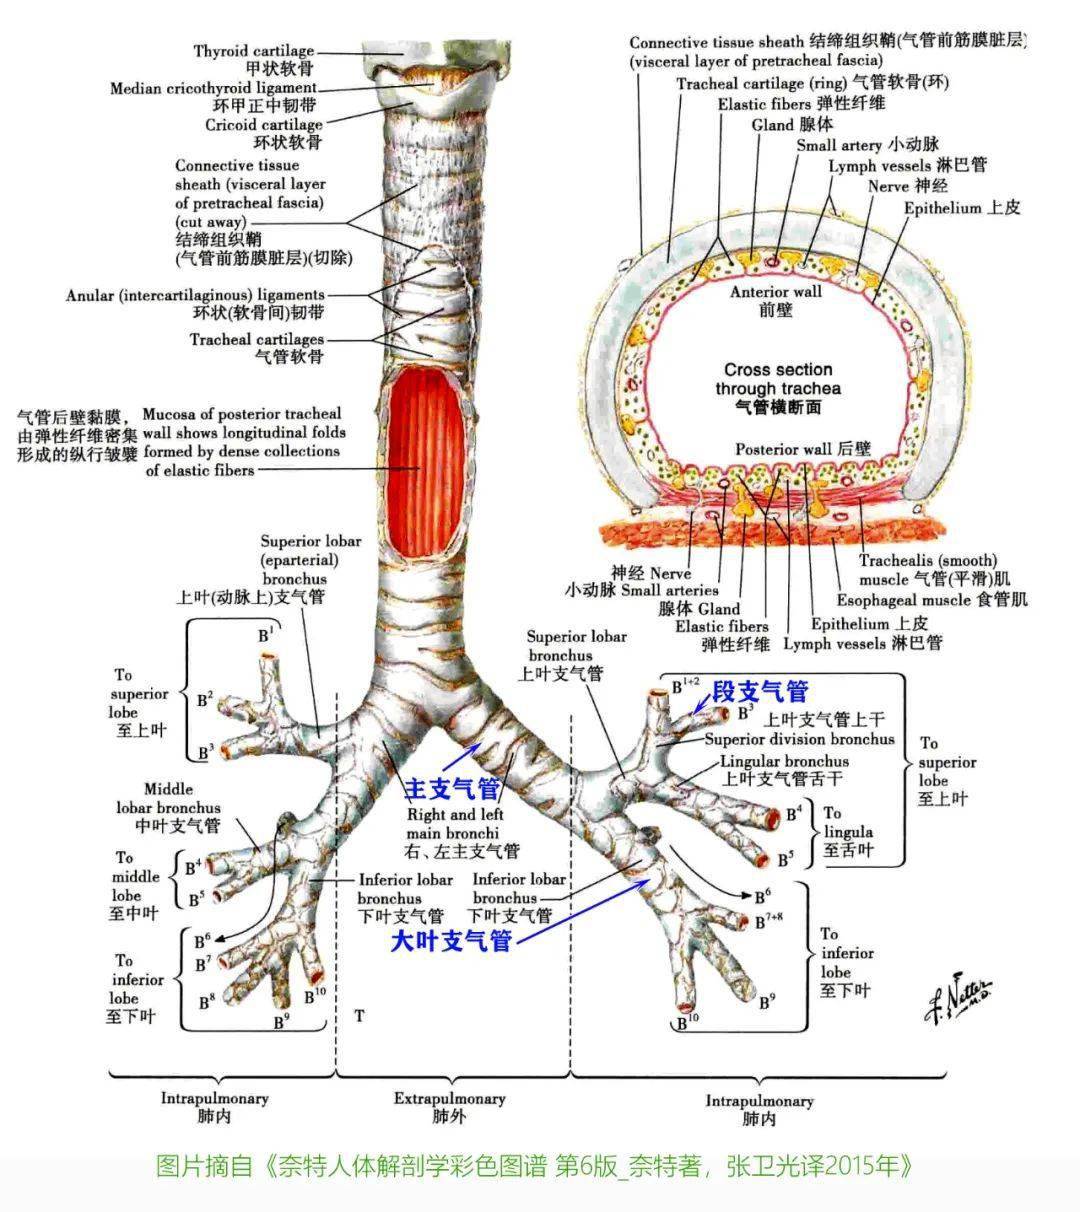 基础知识 | 呼吸道基础解剖知识复习_气管